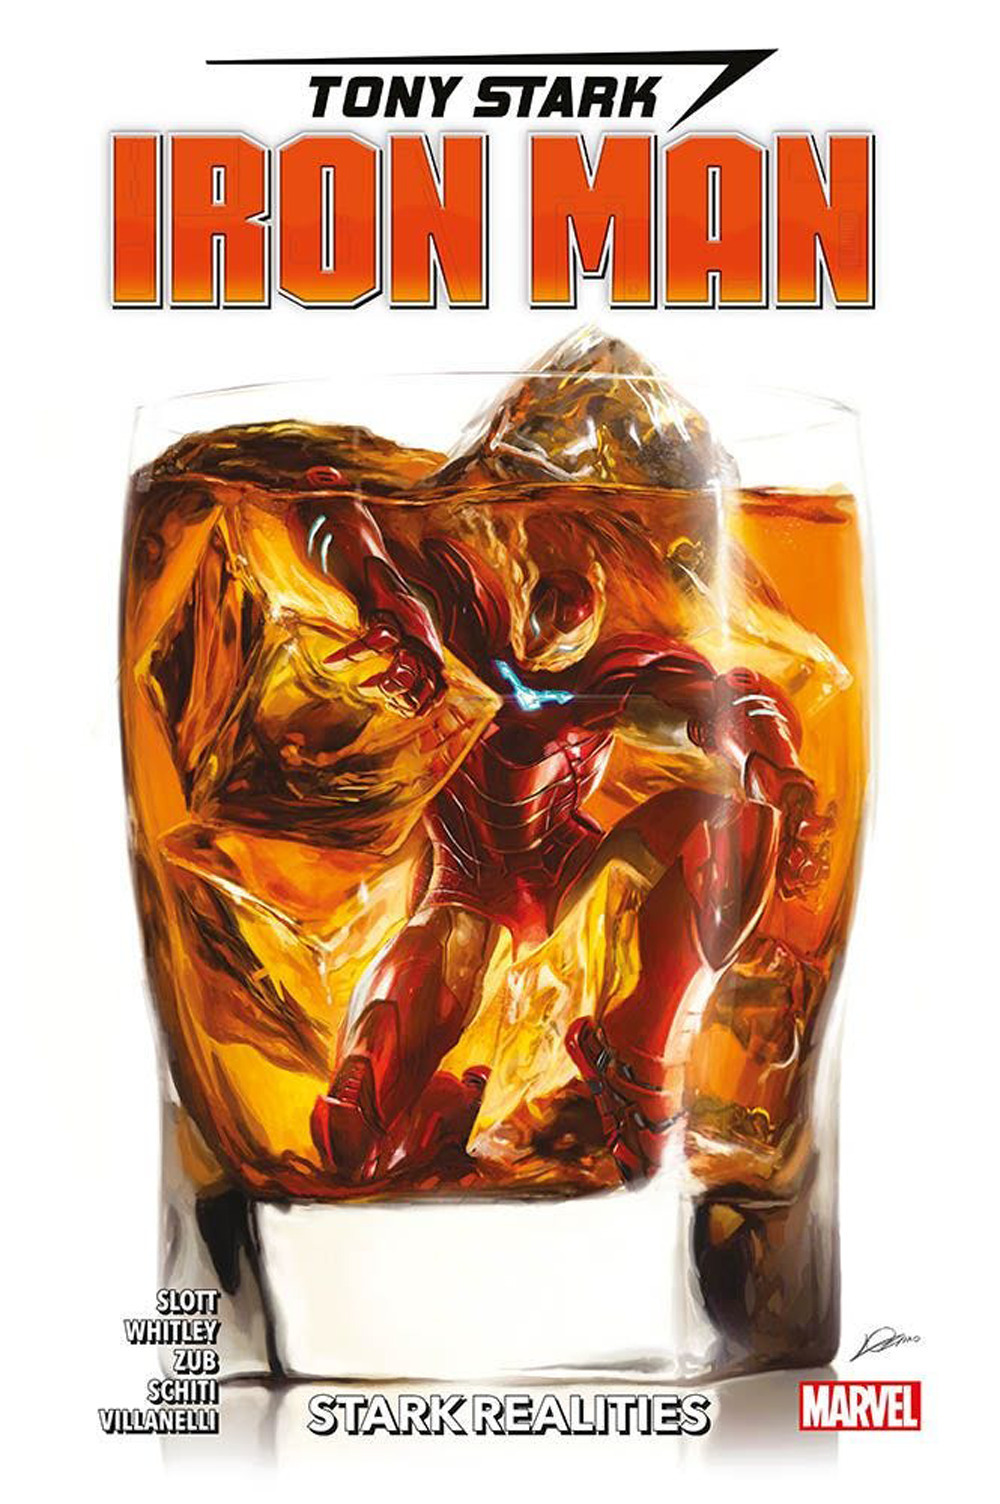 Tony Stark. Iron Man. Vol. 2: Stark realities